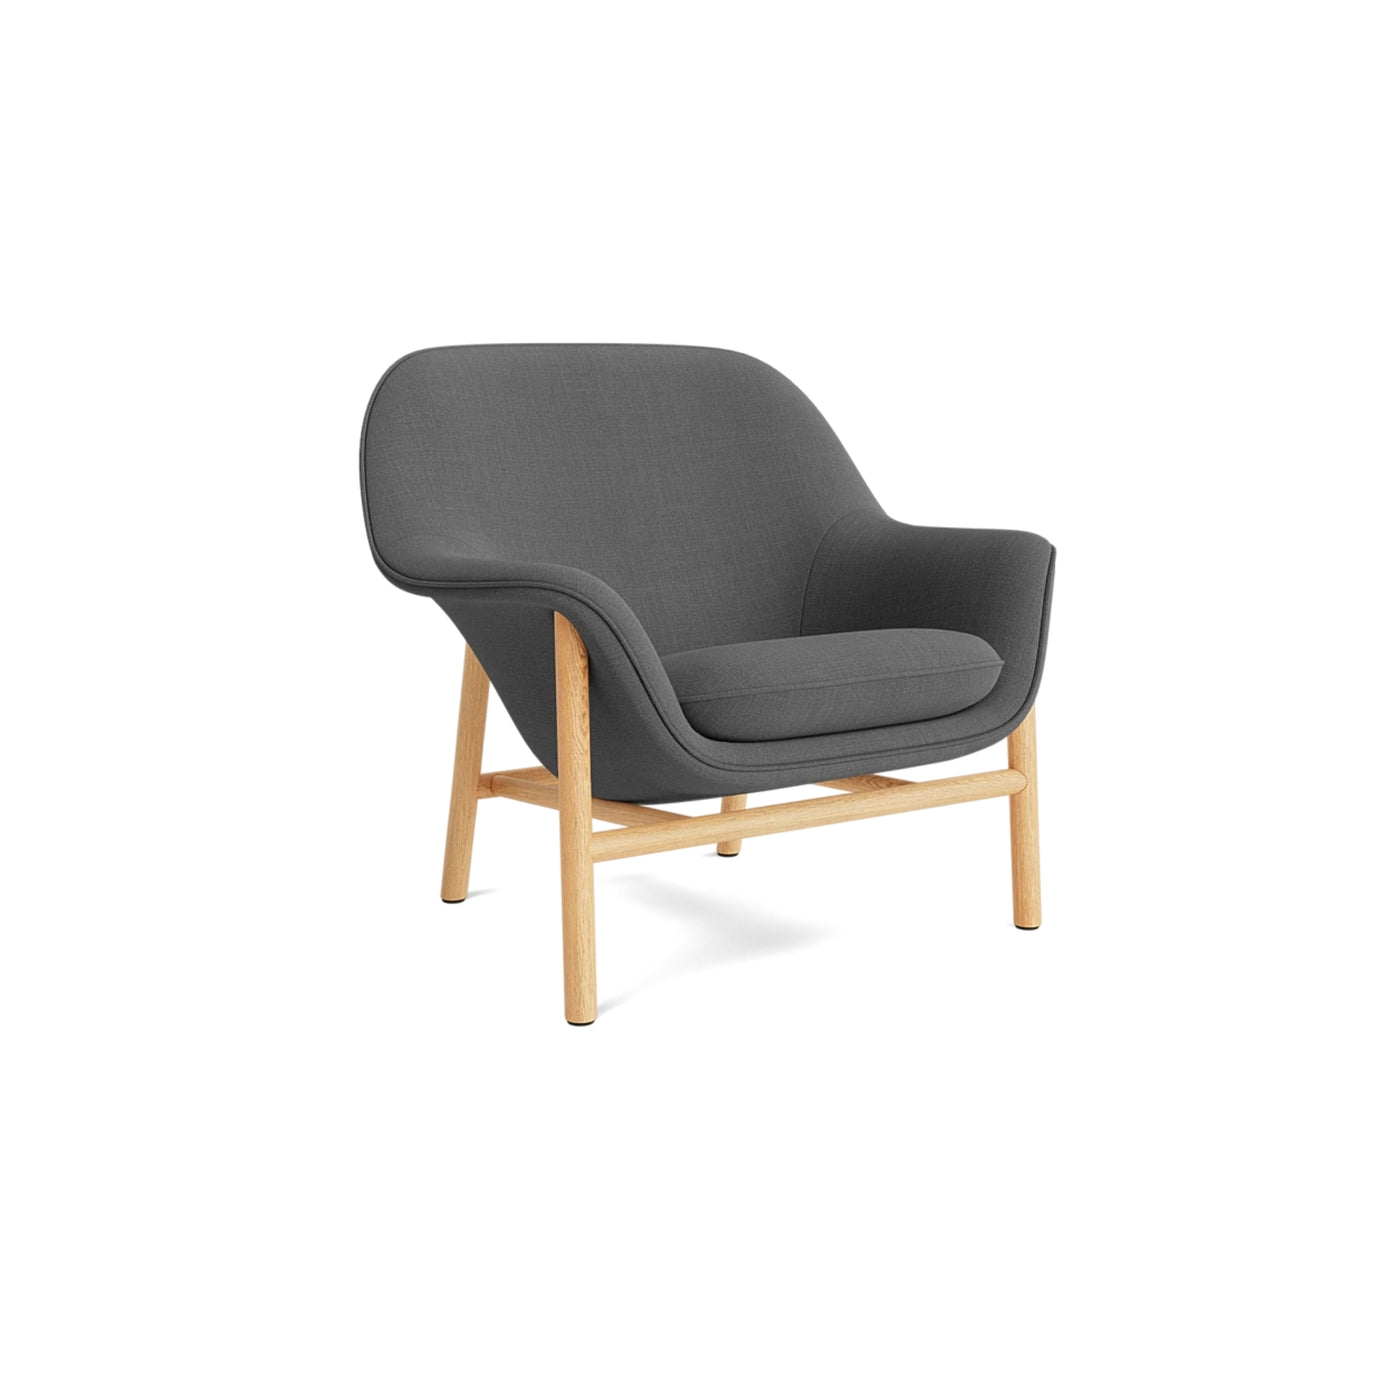 Normann Copenhagen Drape Lounge Chair at someday designs. #colour_remix-163